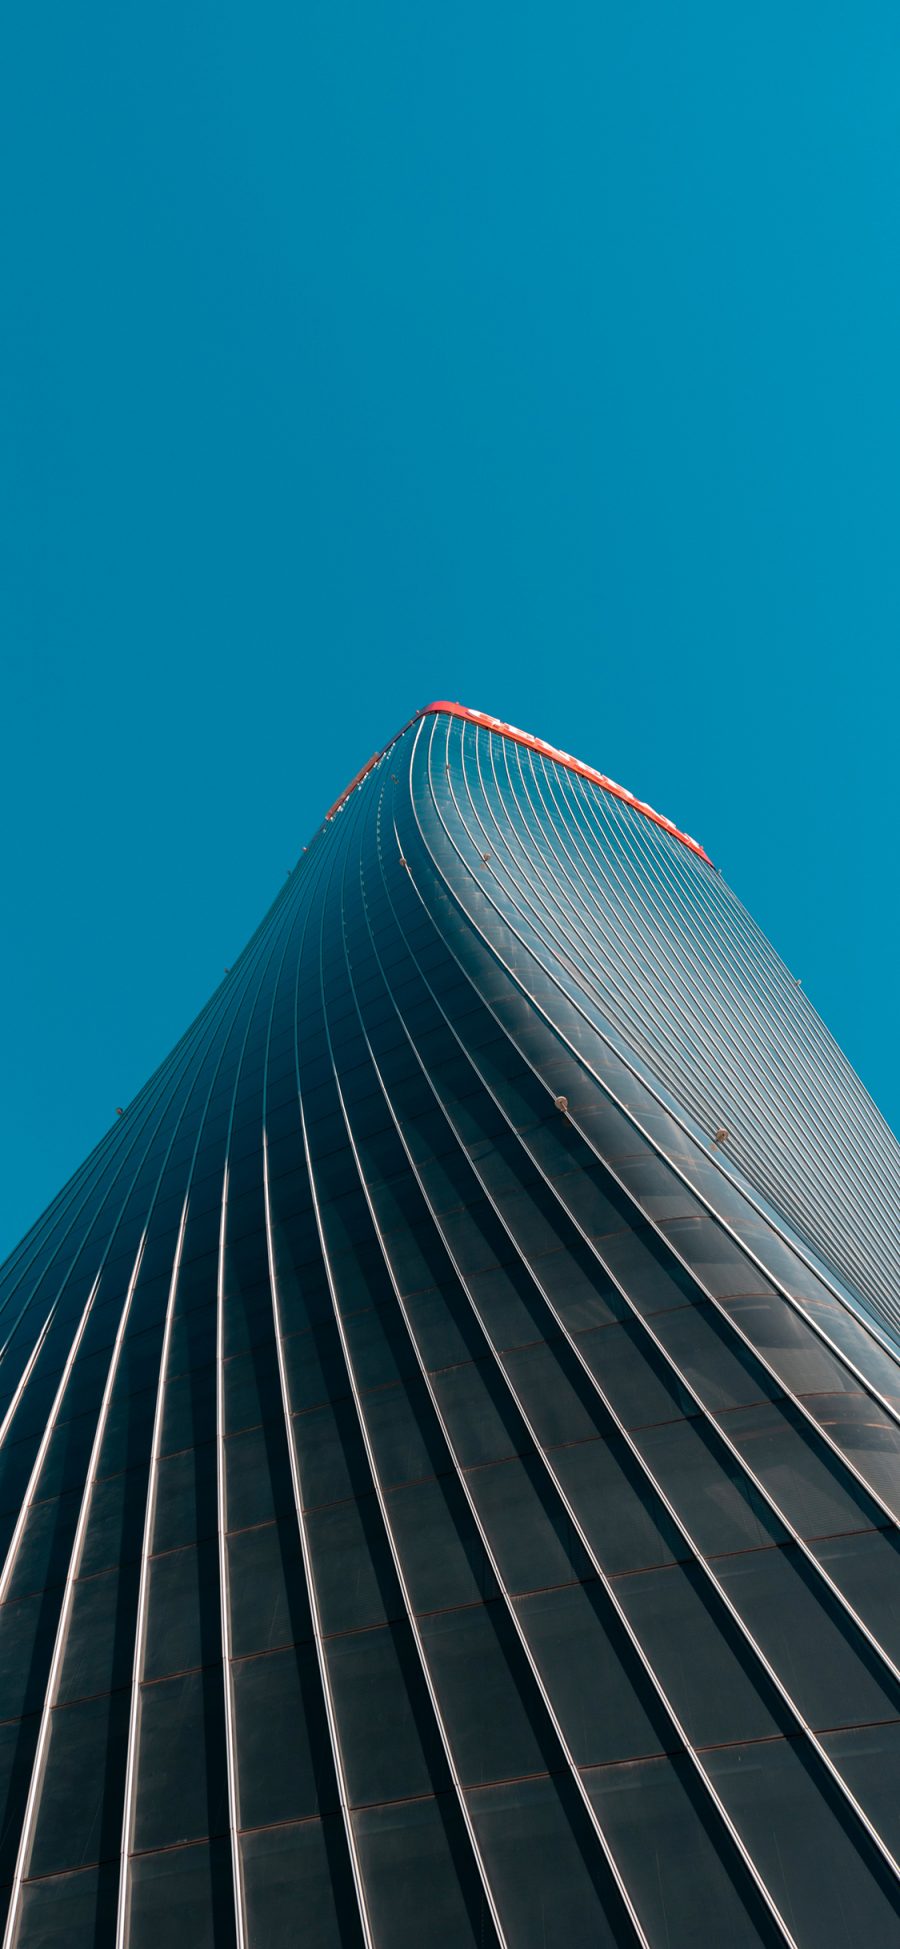 [2436×1125]建筑 天空 蔚蓝 大厦 苹果手机壁纸图片